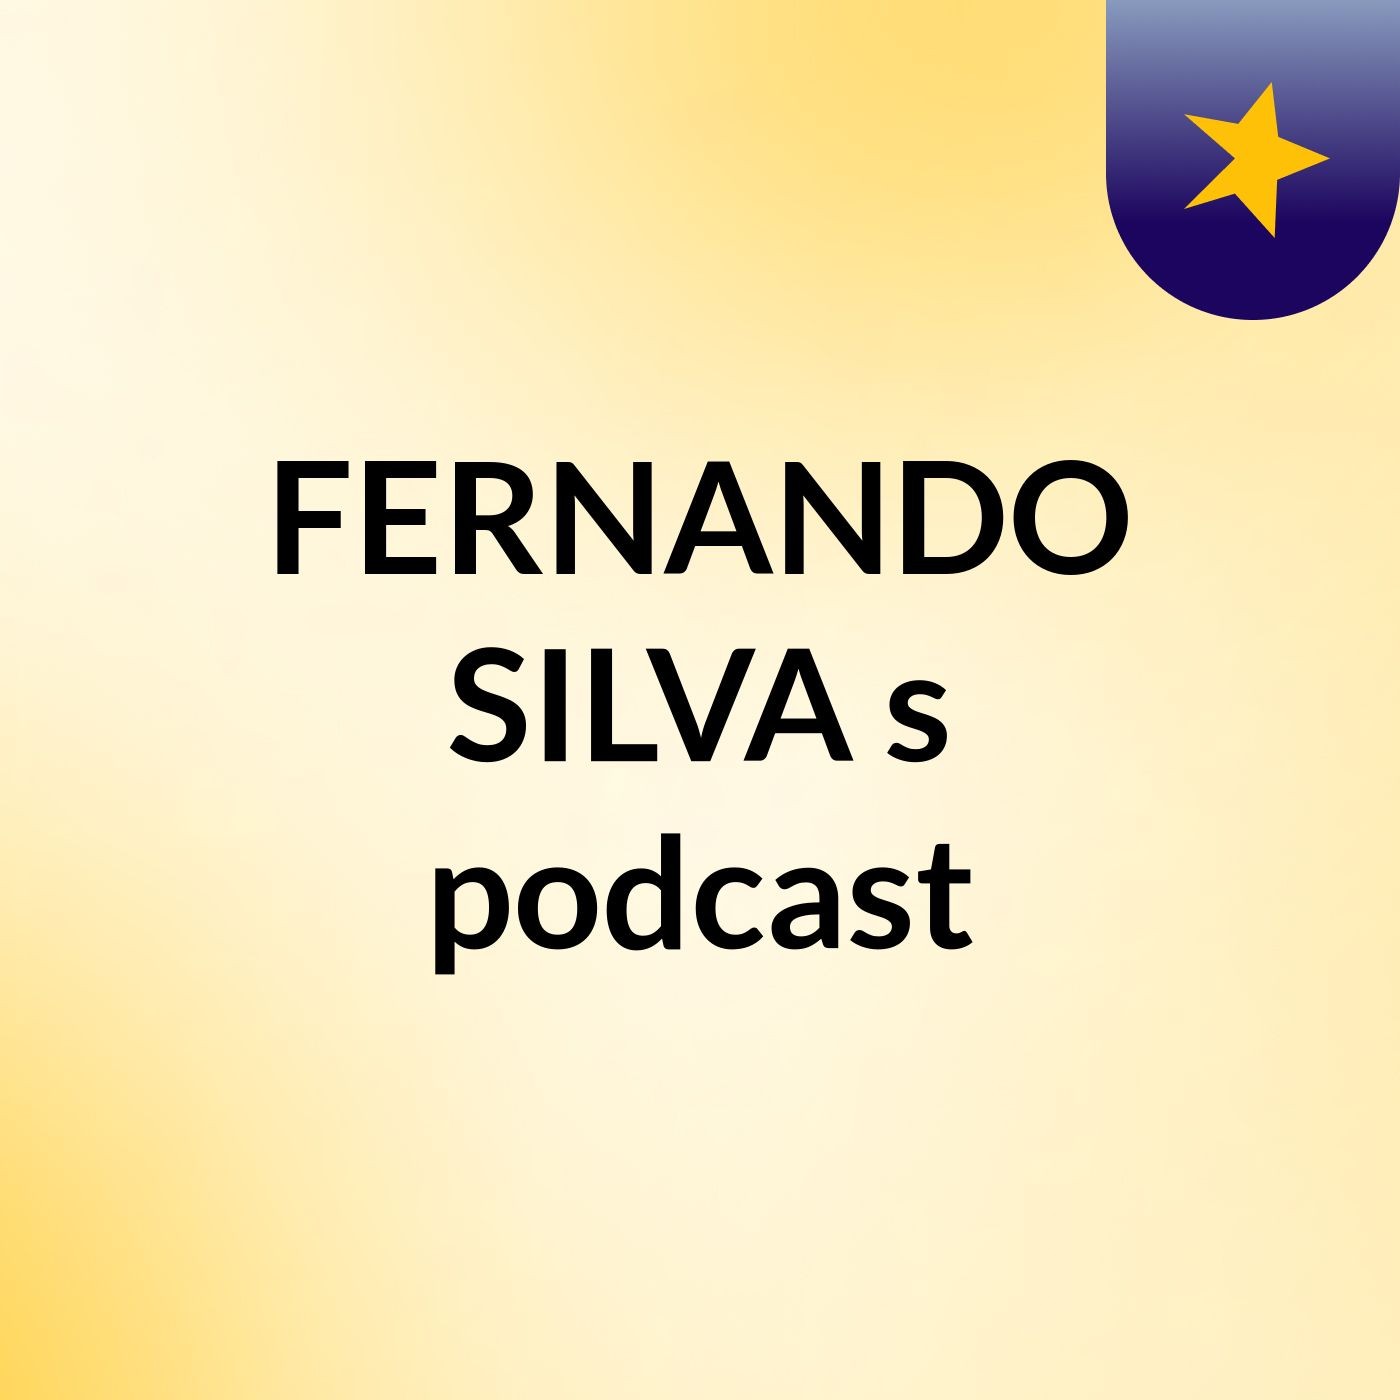 Episódio 3 - FERNANDO SILVA's podcast